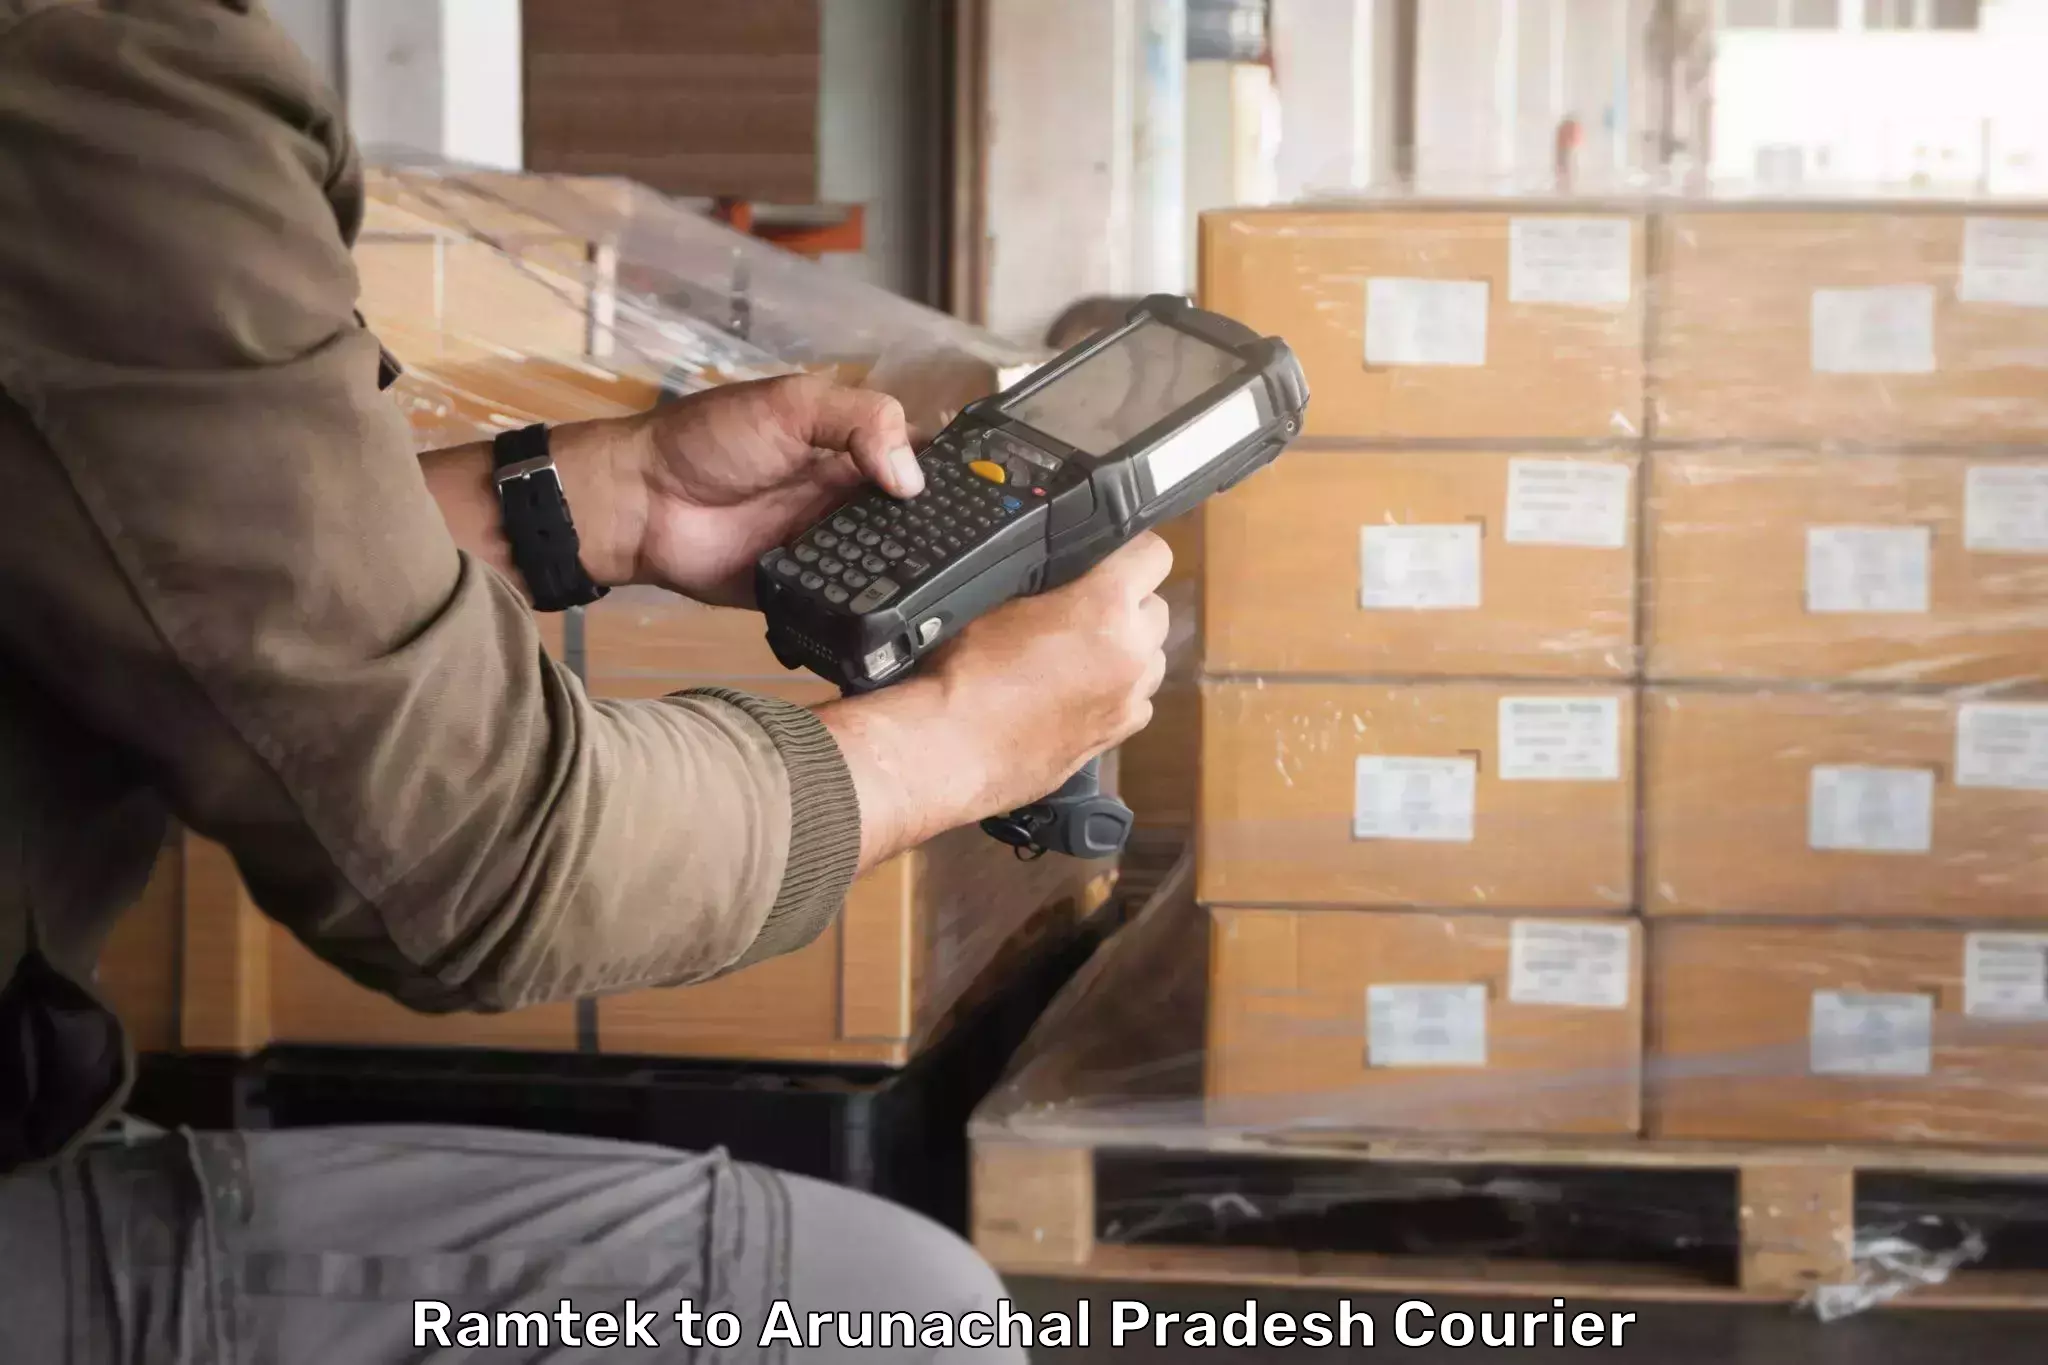 Professional courier handling Ramtek to Lower Subansiri